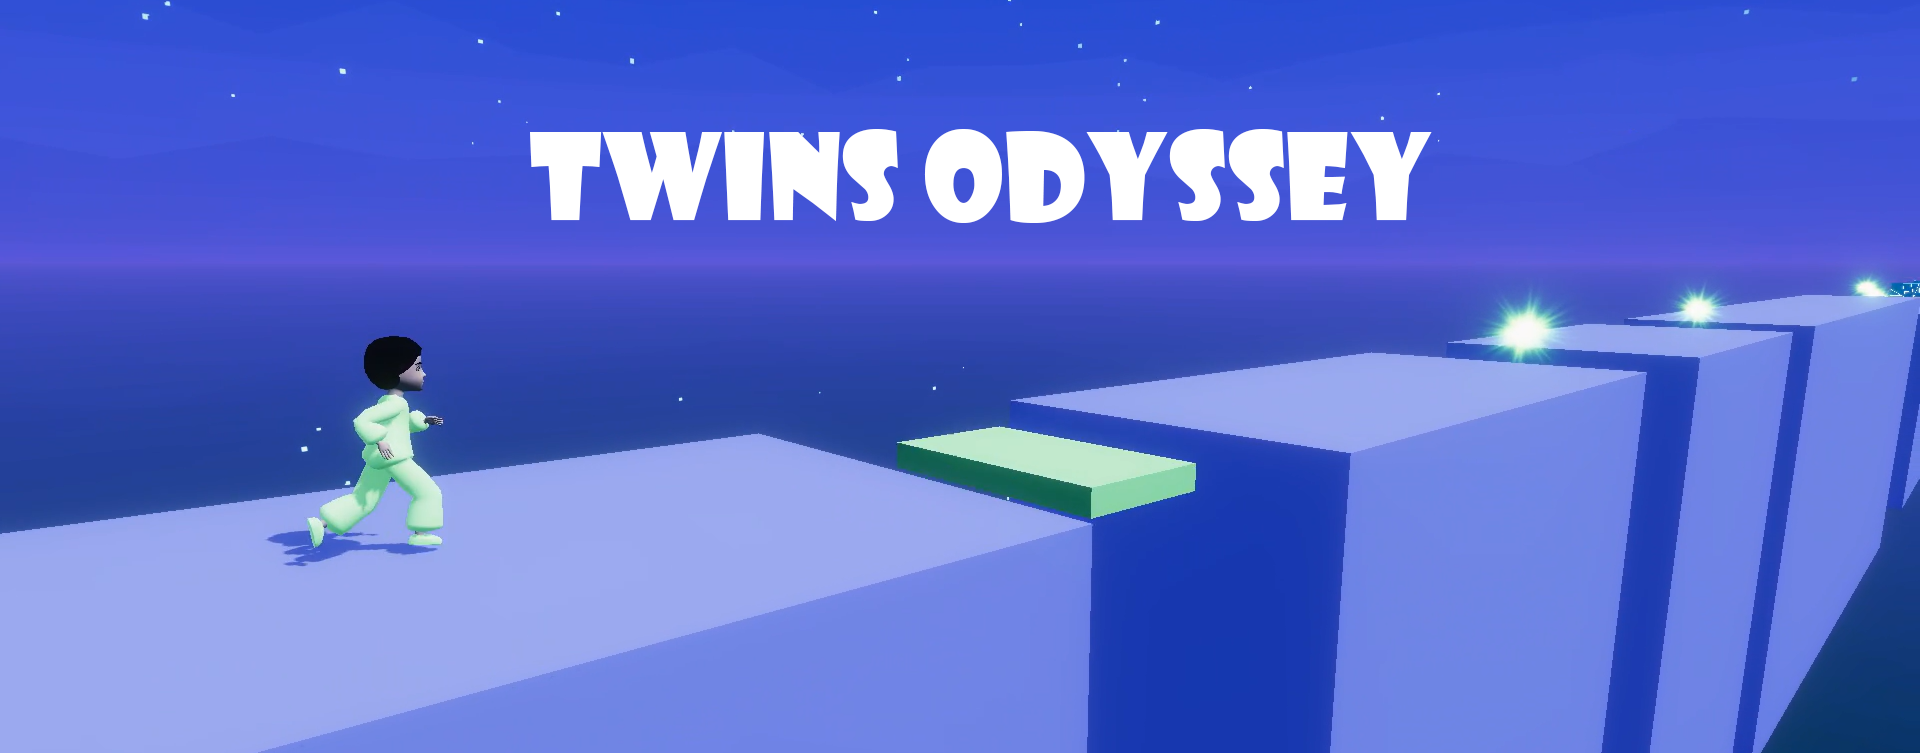 Twins Odyssey